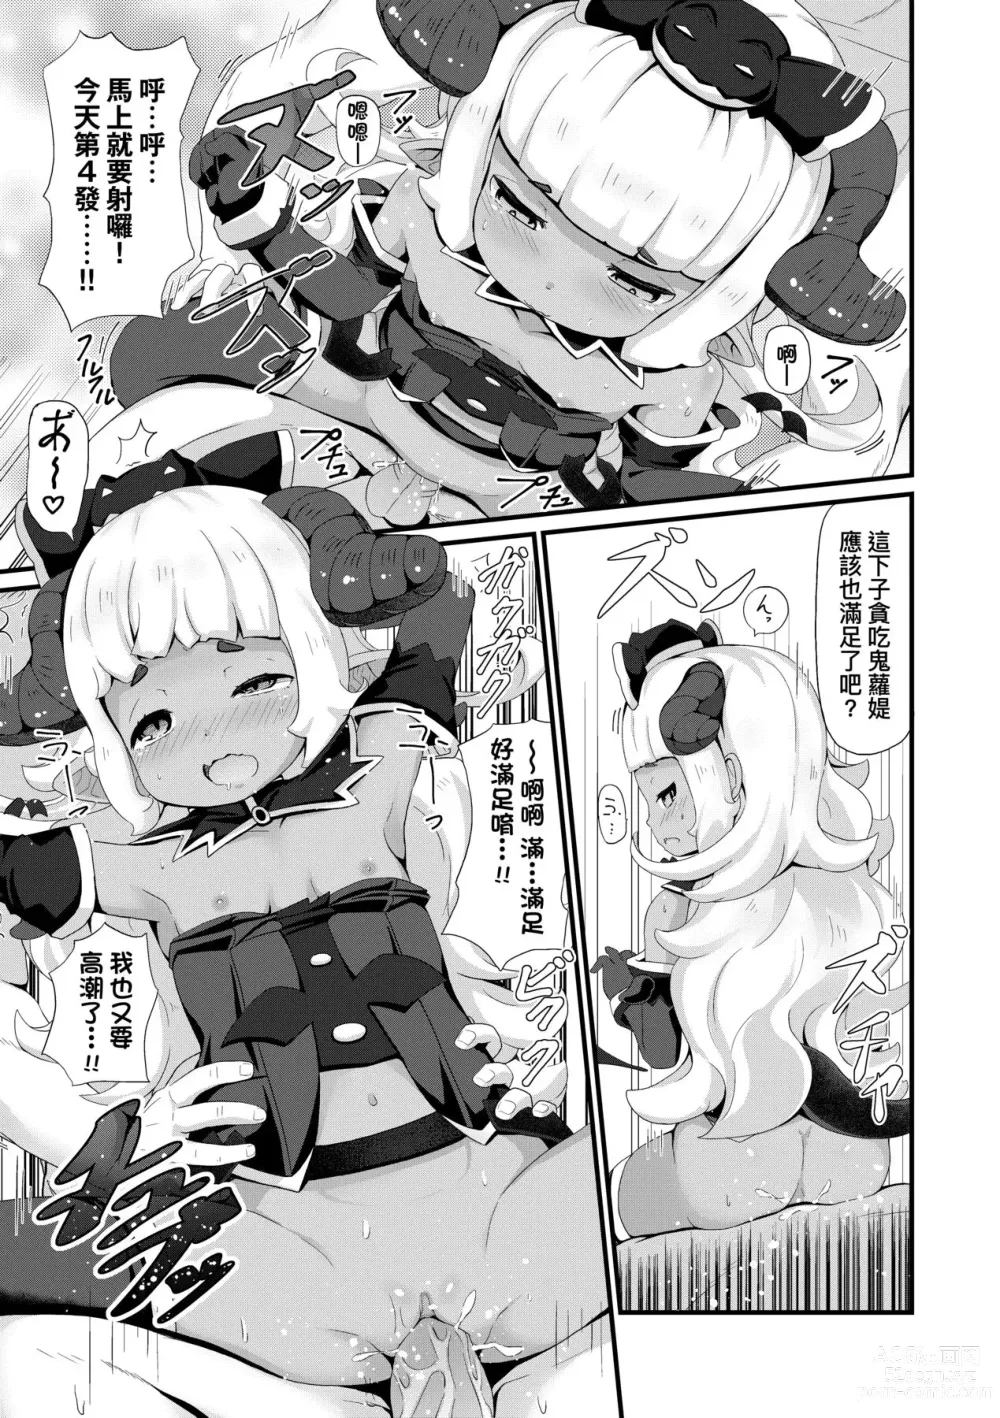 Page 176 of manga Kashi Oni Kochira (decensored)